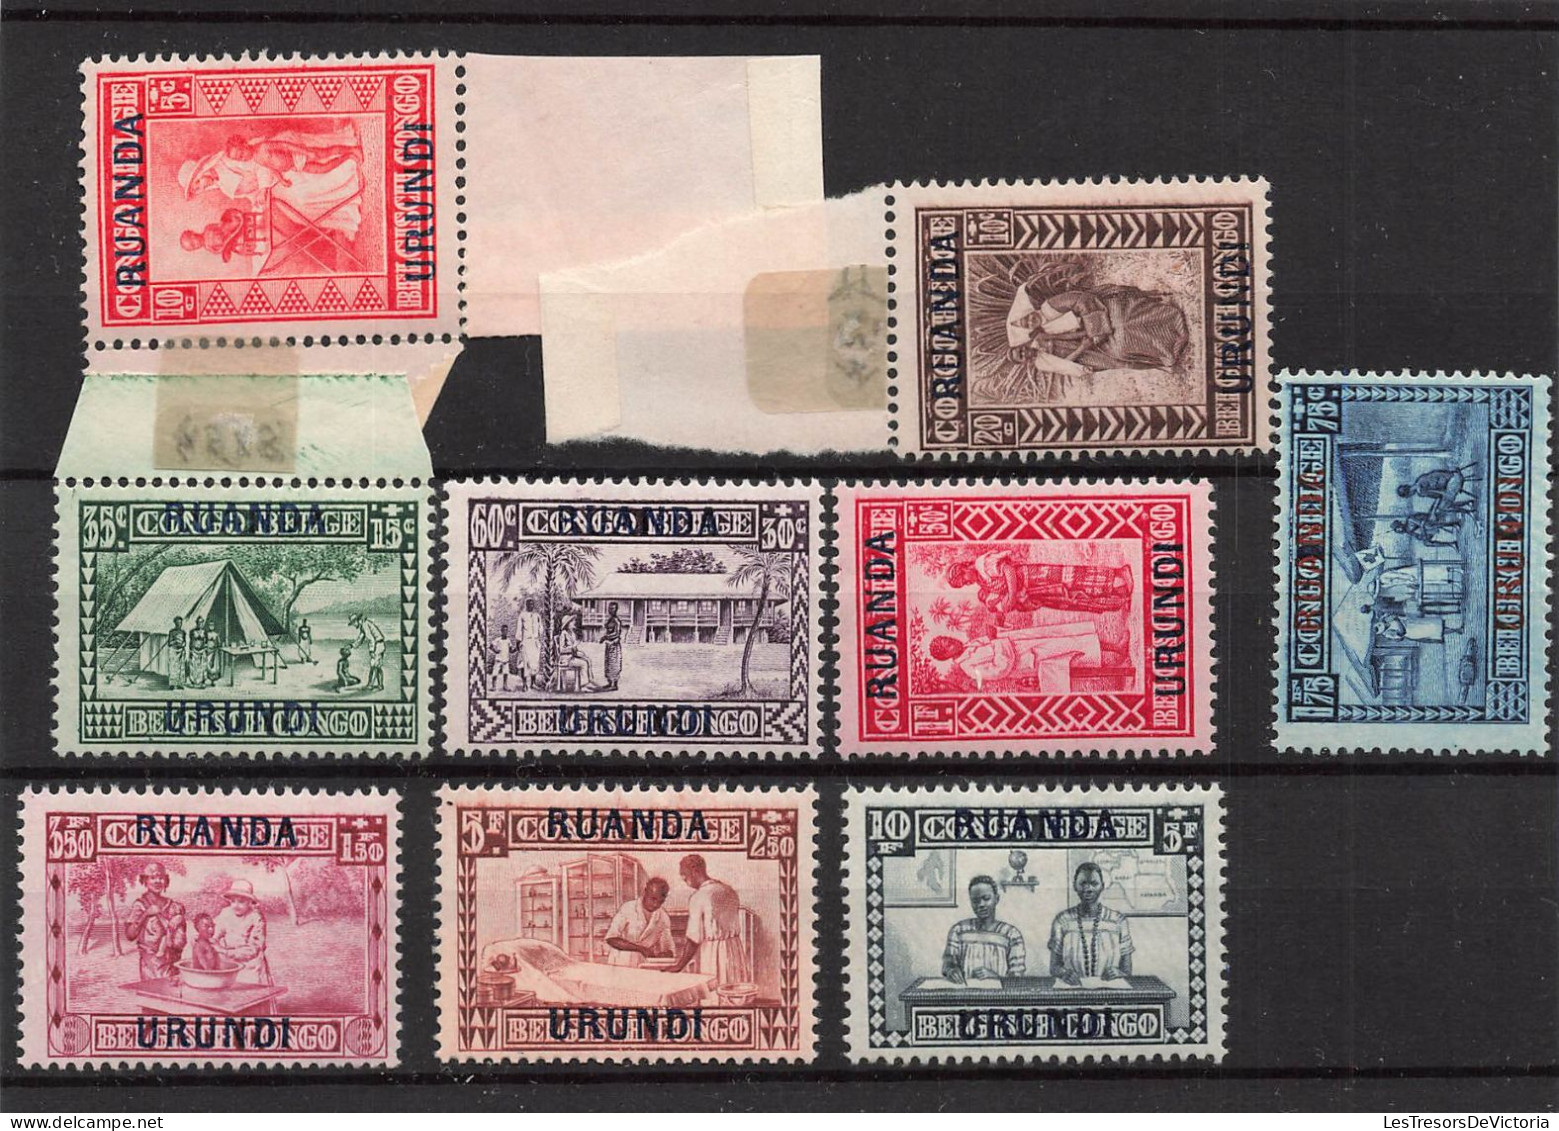 Timbres - Ruanda Urundi - 1930 - COB 81/89*Goutte De Lait Surchargé - Cote75 - Neufs